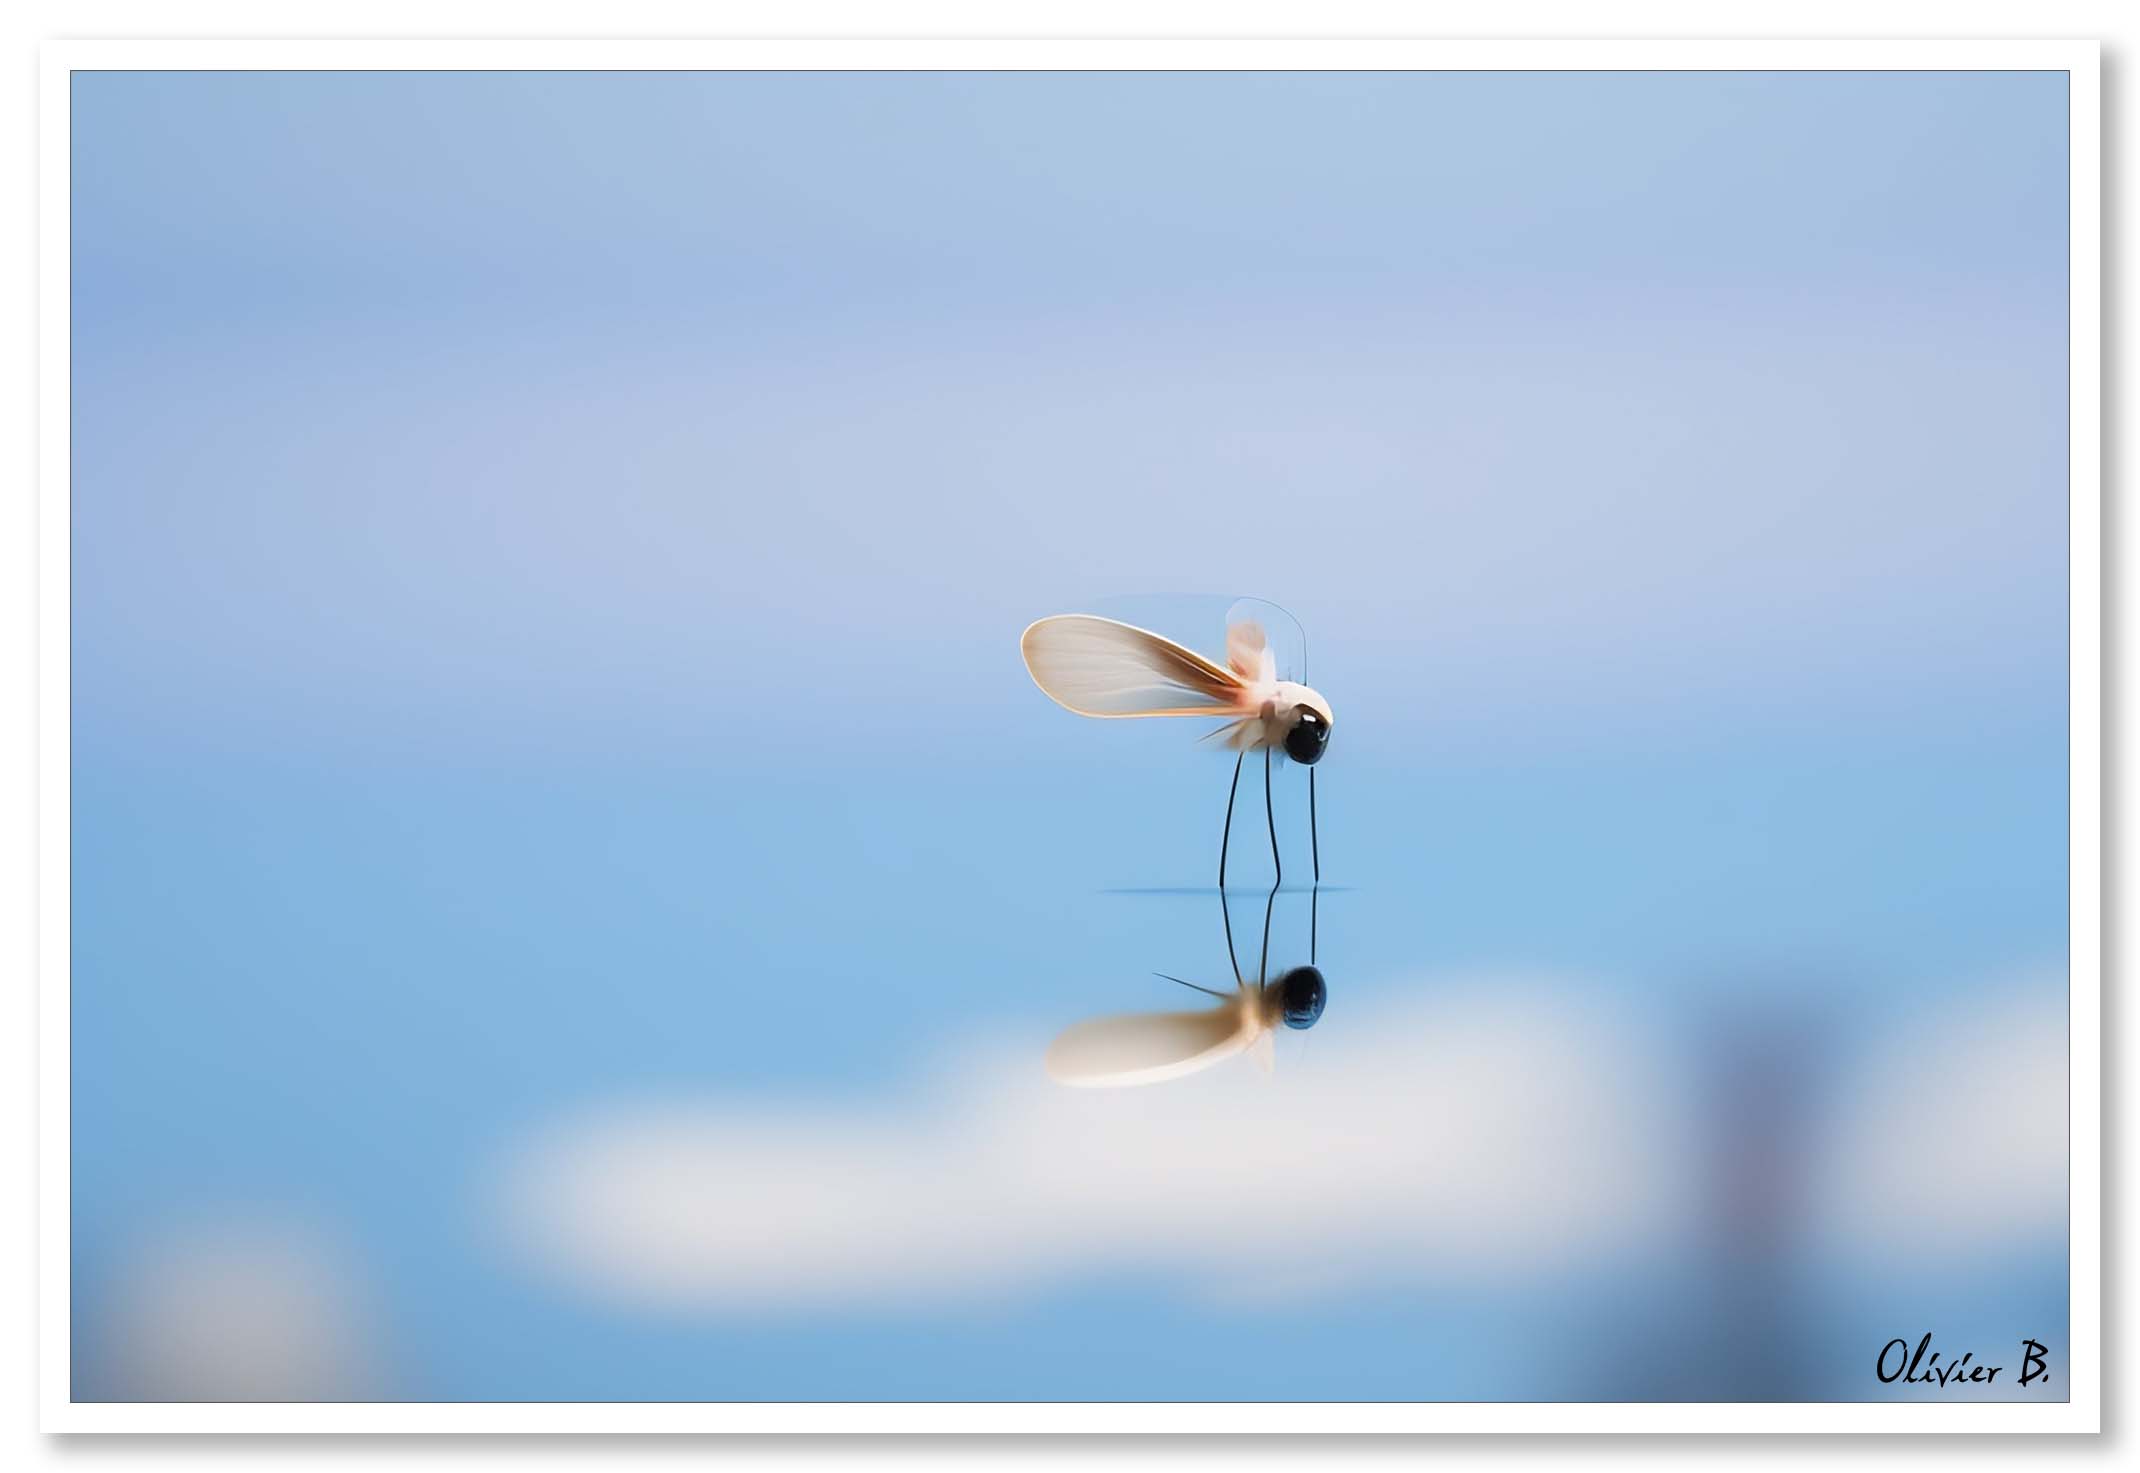 Un moustique chimérique se repose sur la surface de l'eau, contemplant son propre reflet dans un univers minimaliste